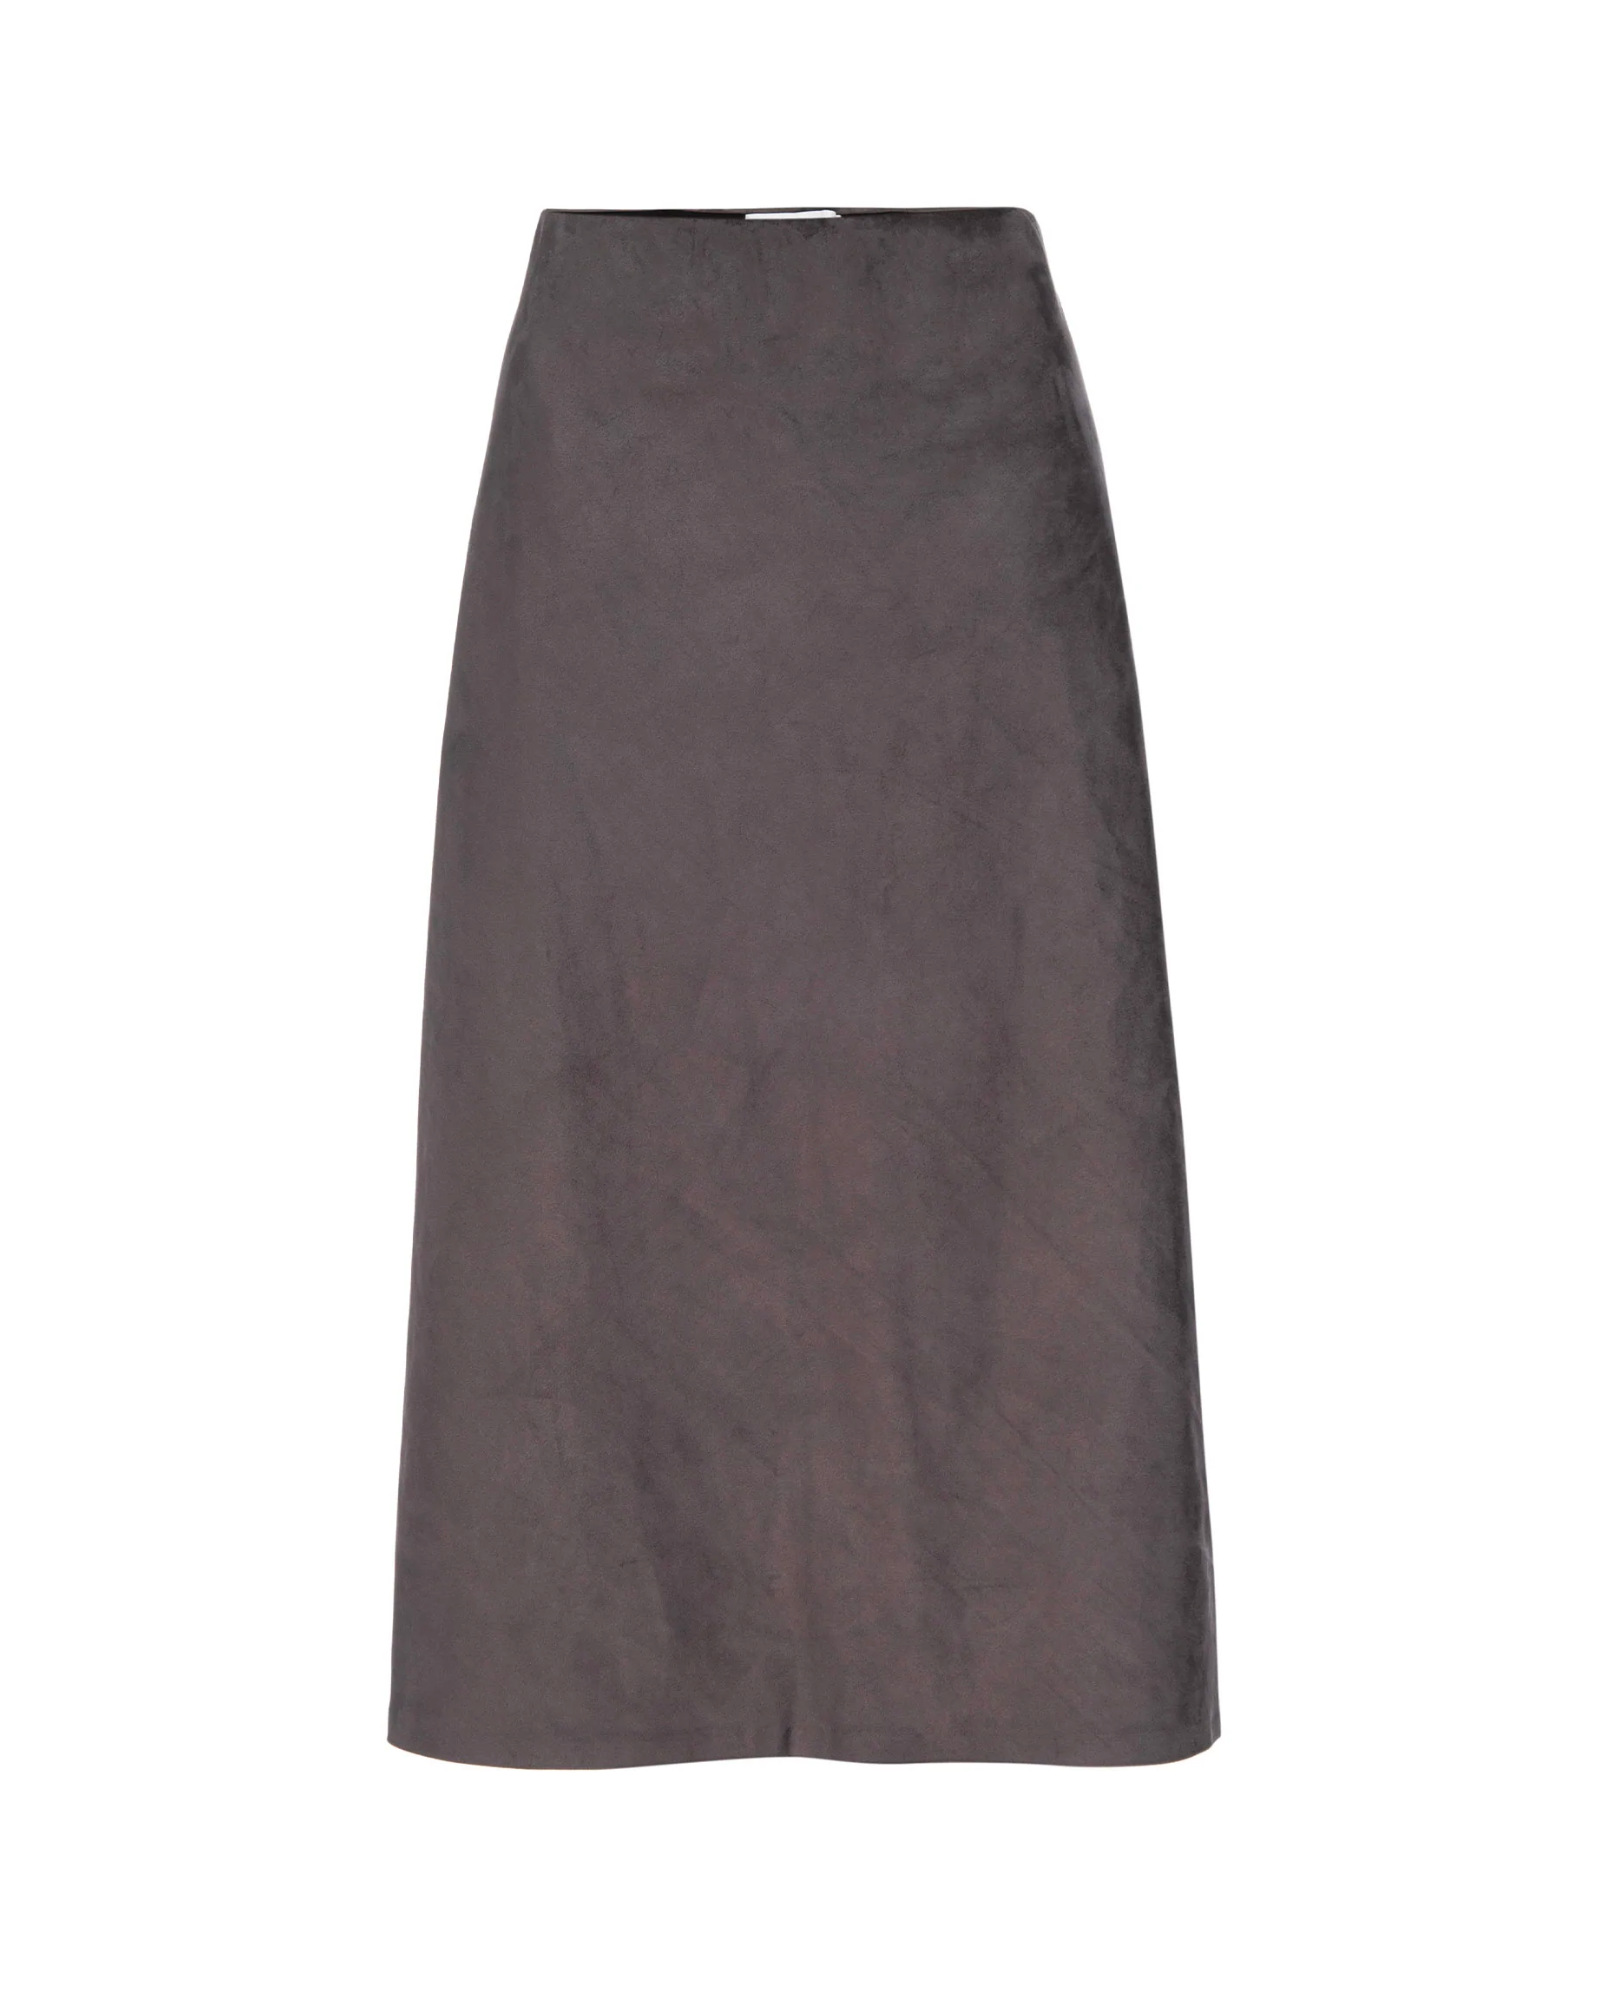 Brochu Walker Hallie Slip Skirt in Sable Grey